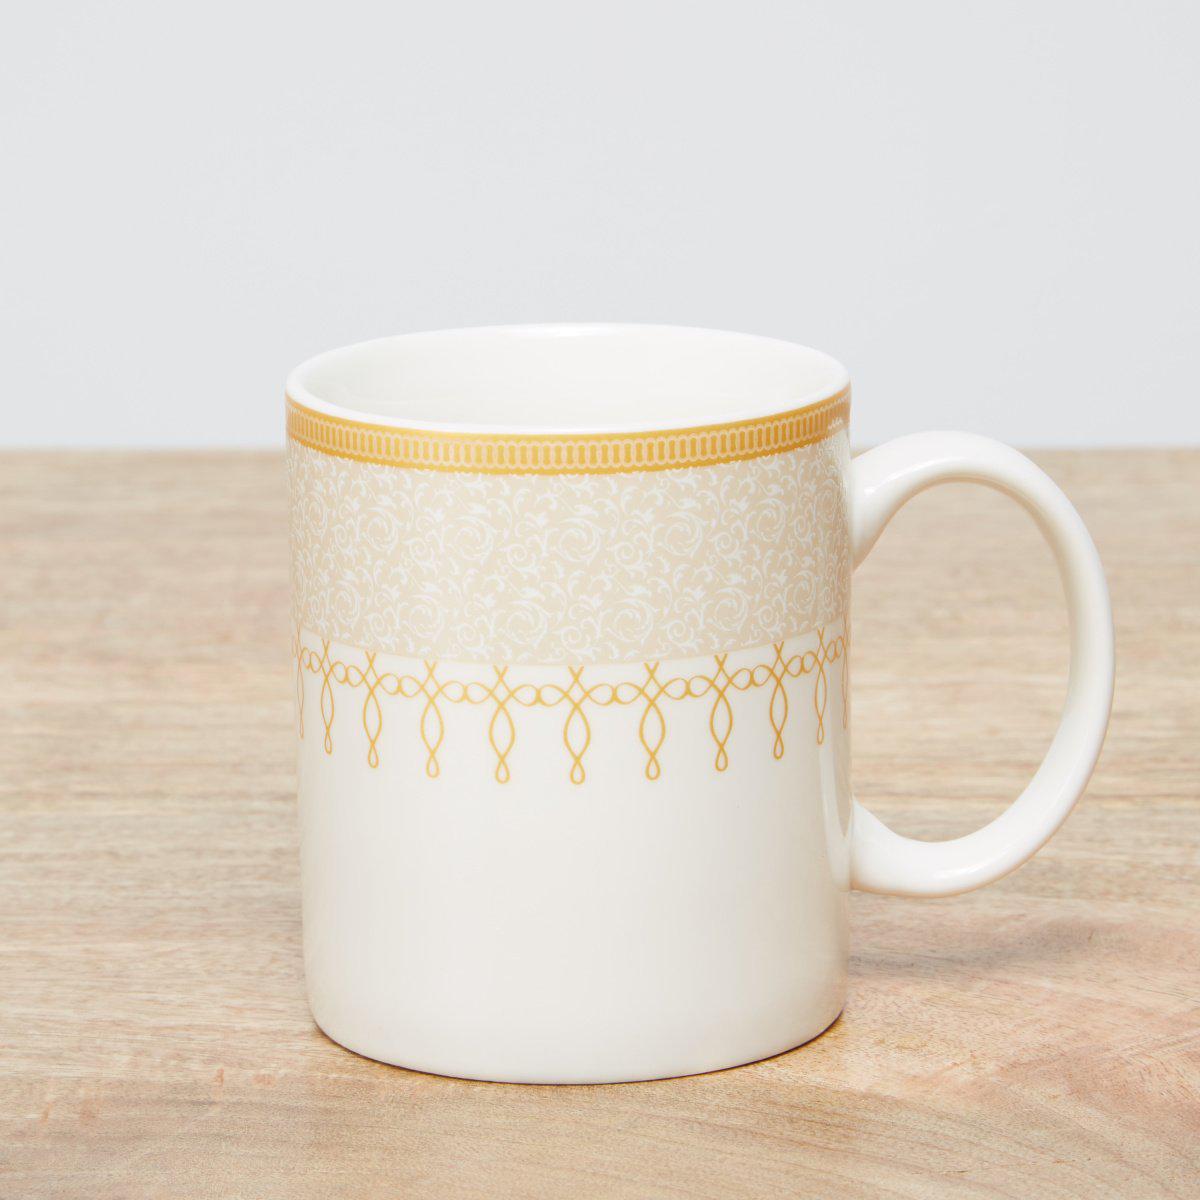 Mimira. Printed Mug with Handle – Set of 2